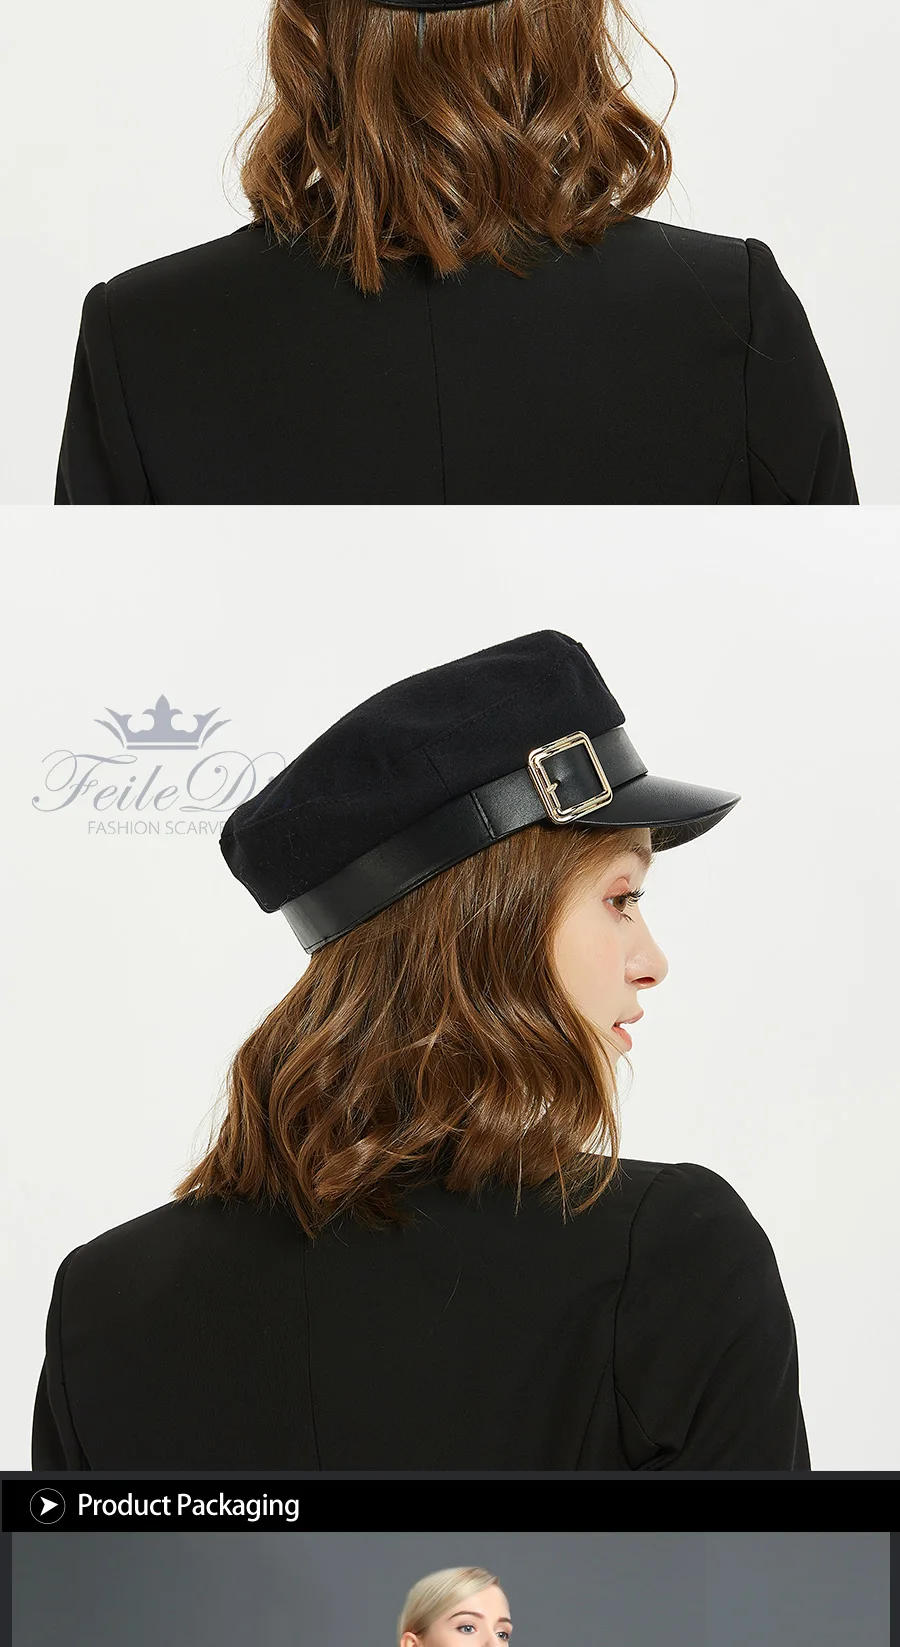 [FEILEDIS] военная шляпа зимние шапки для Для женщин Для мужчин Винтаж Flat Top Militar шляпа чёрный берет армии Кепки LR-07